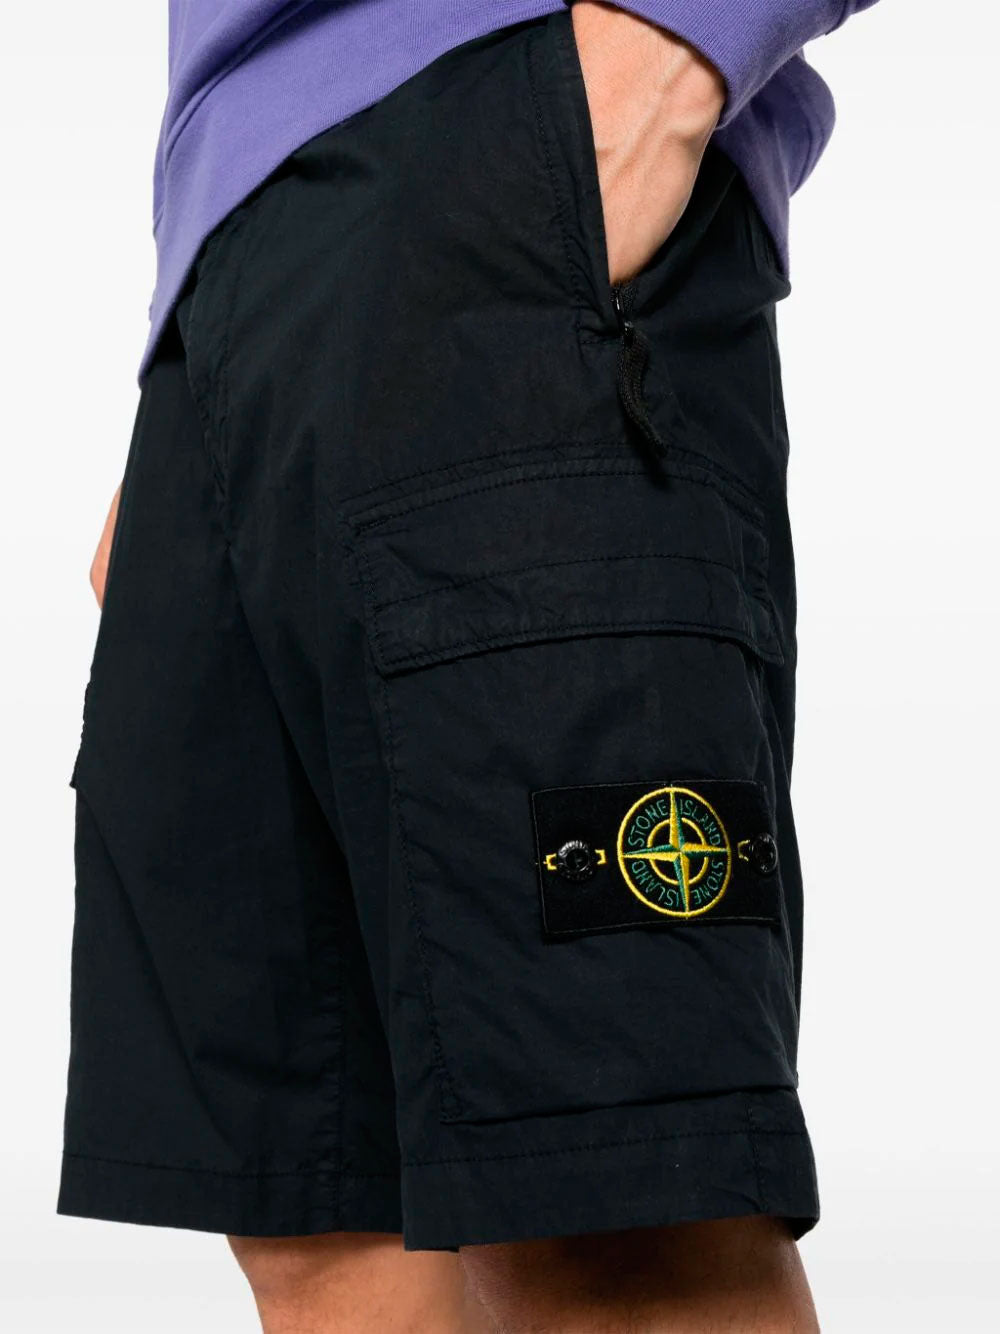 Compass-badge bermuda shorts